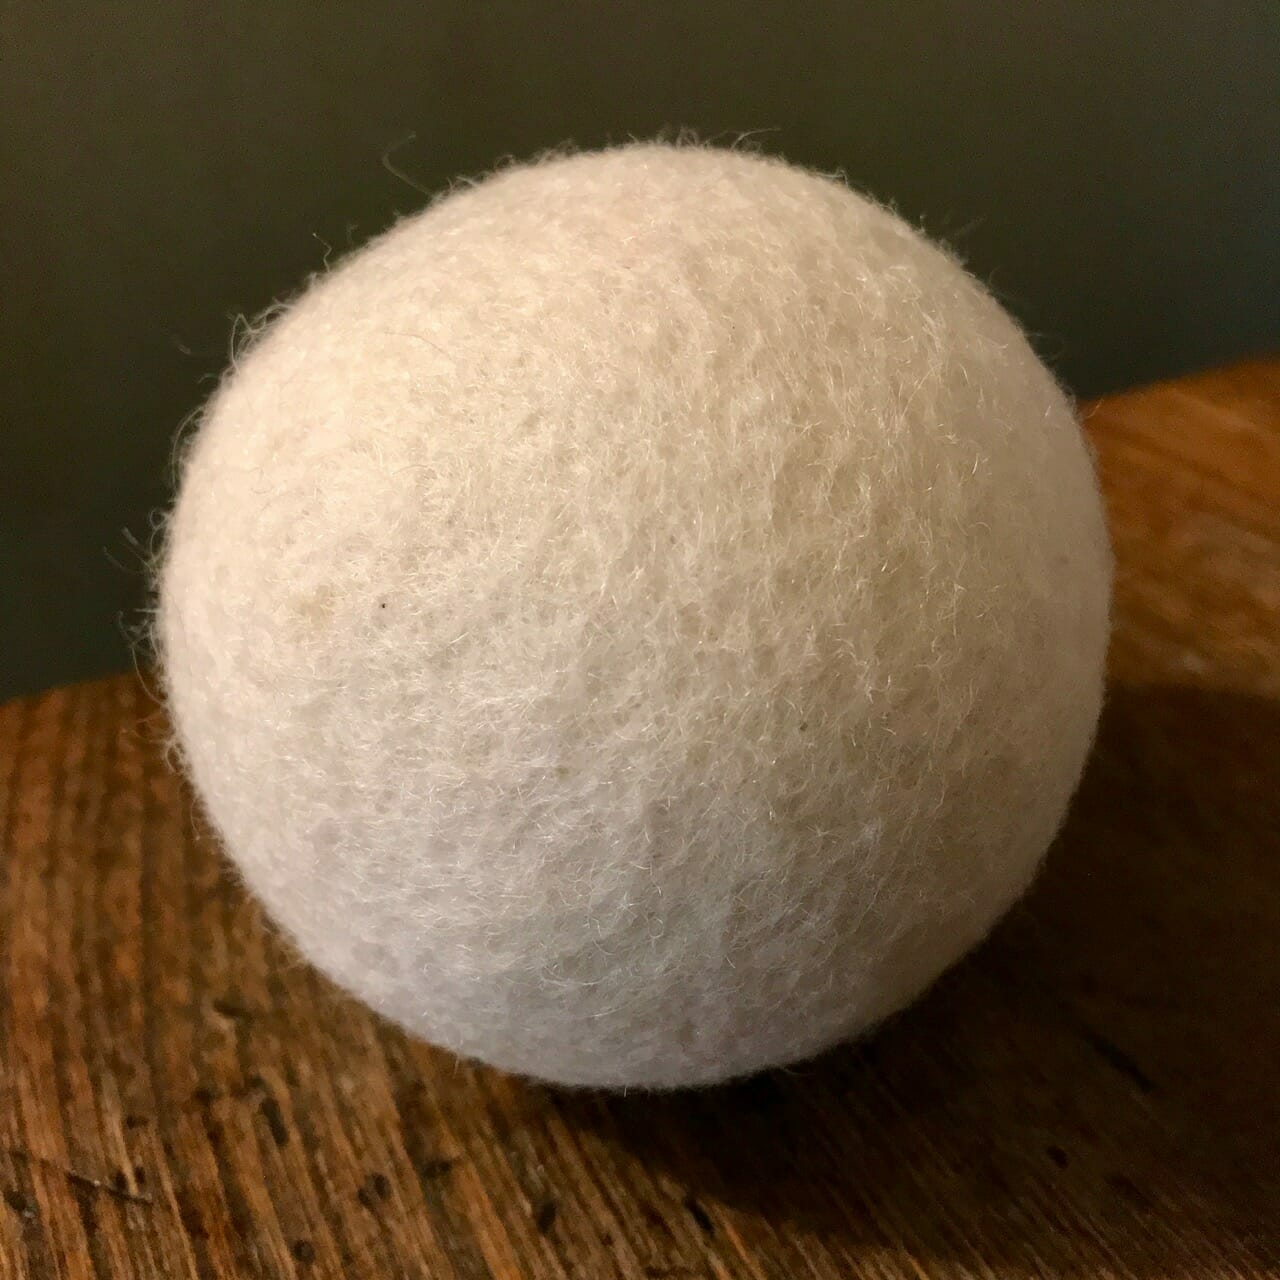 4 cm Natural Wool Felt Balls - Fibrecraft